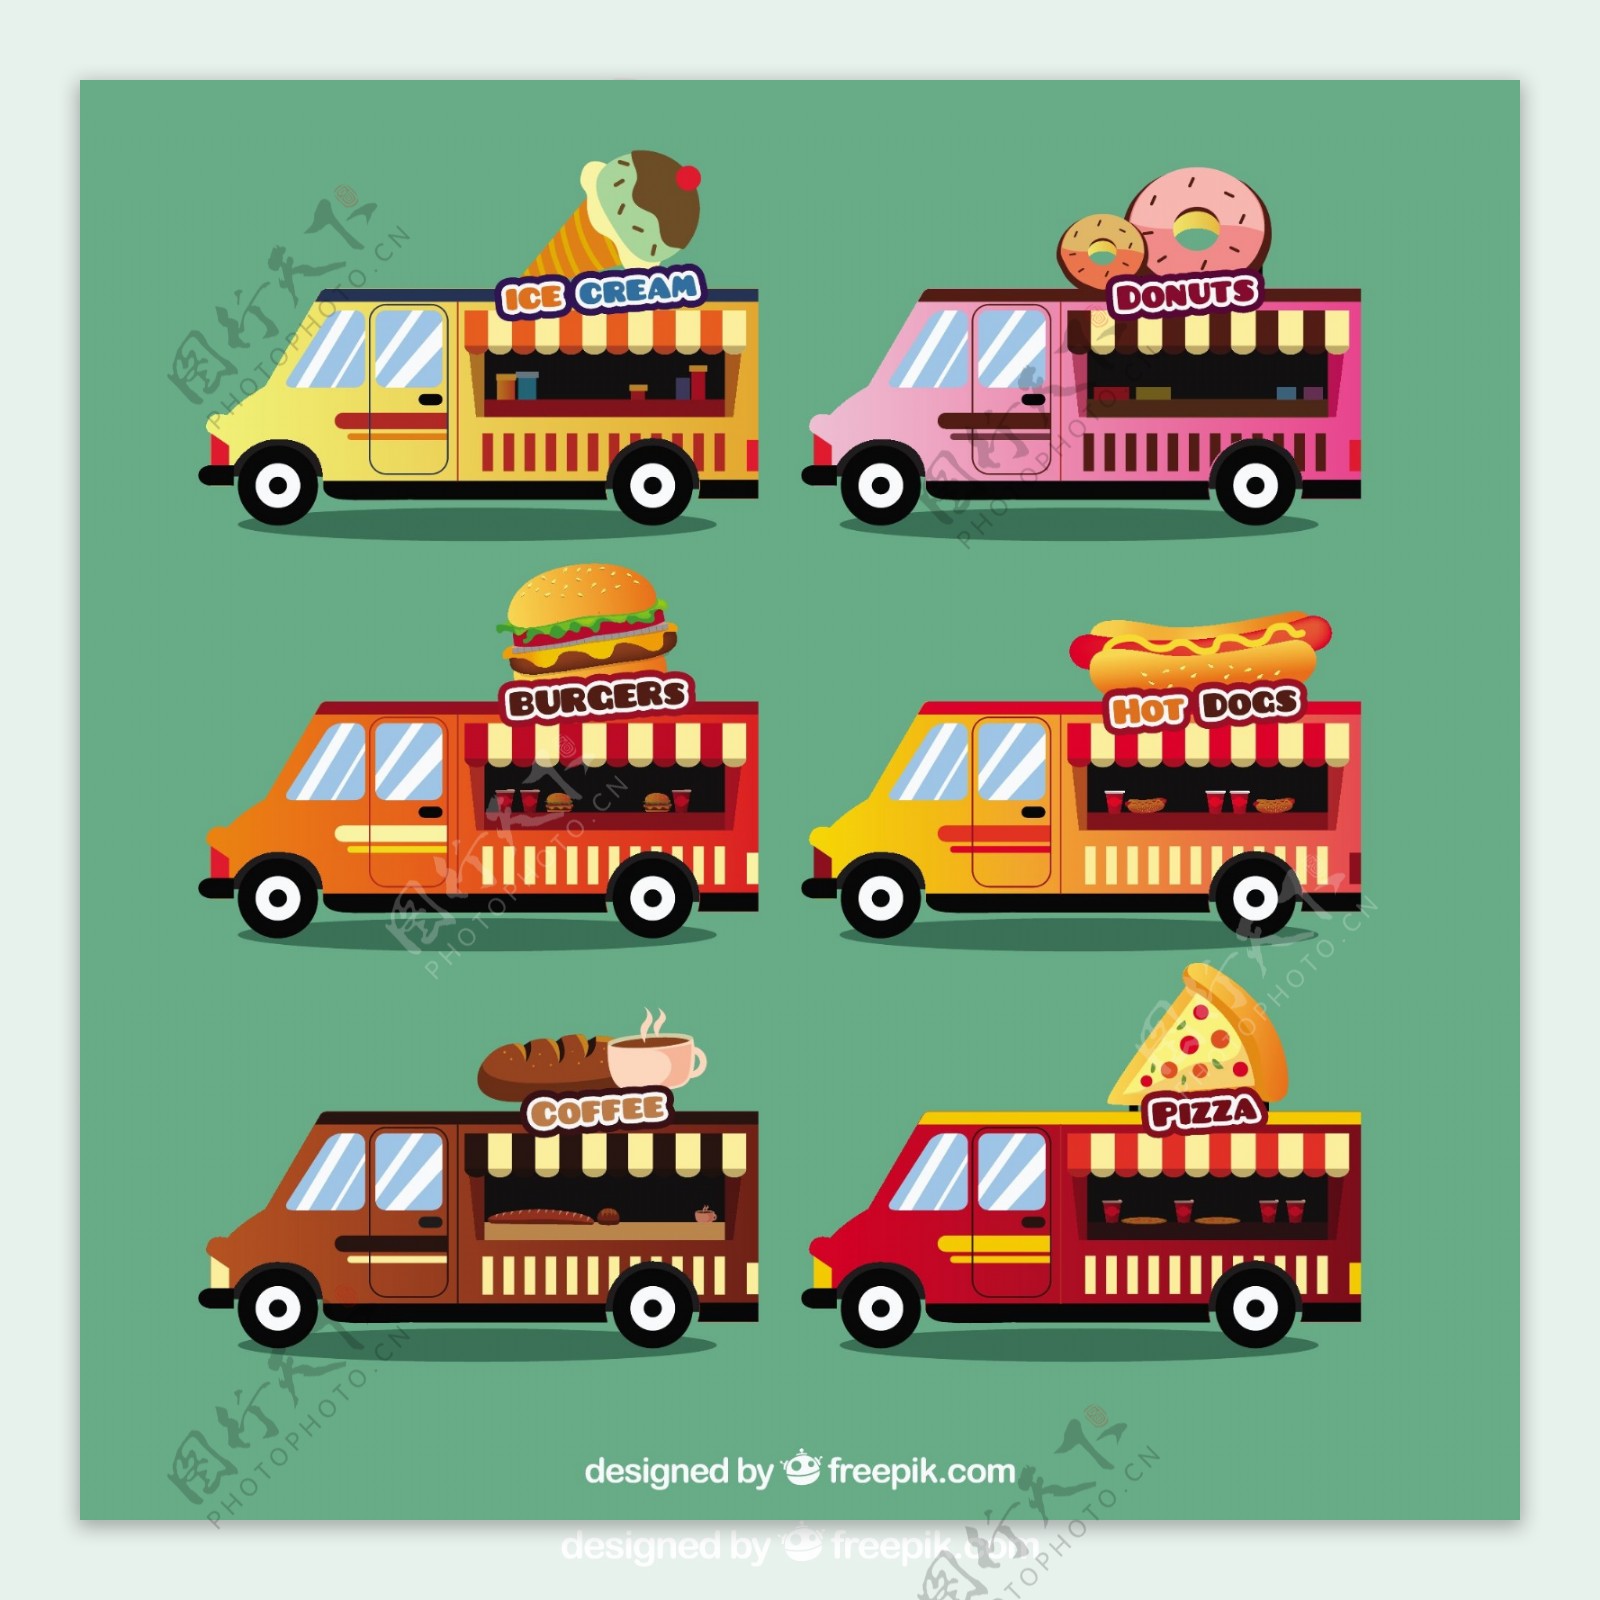 6种不同的食品卡车模型收集